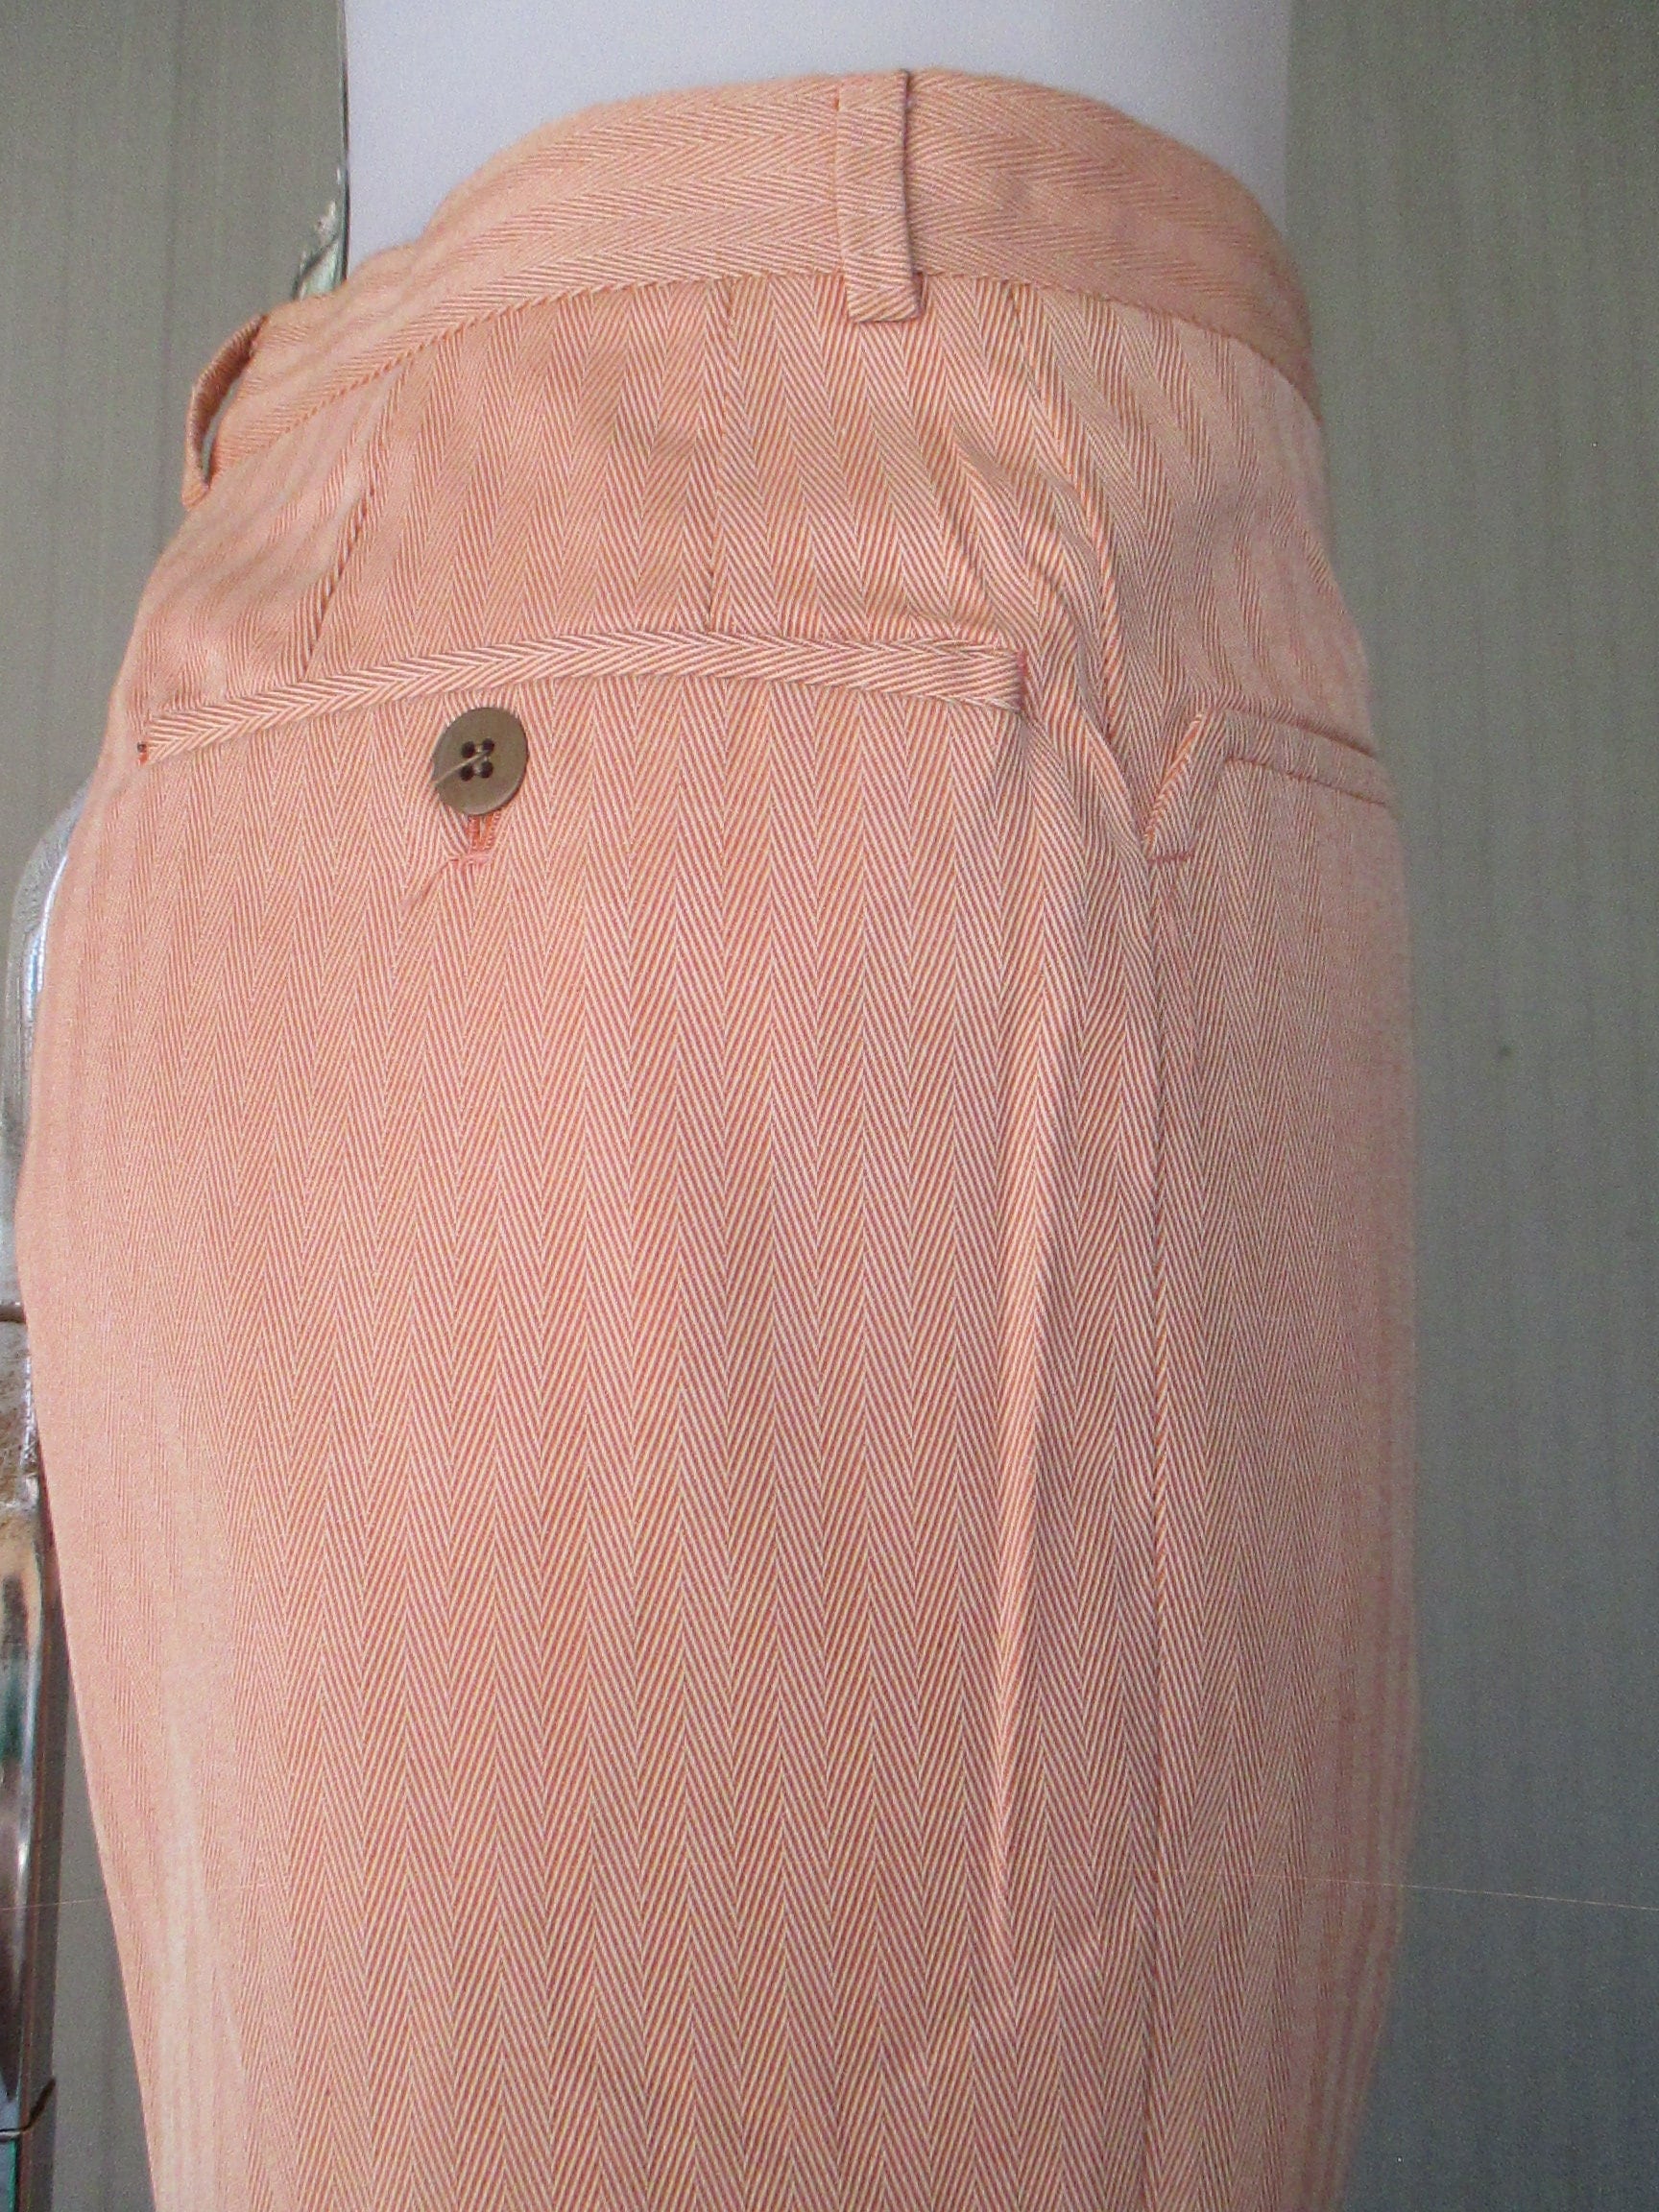 Size 0 Gray Cigarette Pant - XXS 1950s Charcoal Cotton Canvas - 50s 60 –  Vintage Vixen Clothing